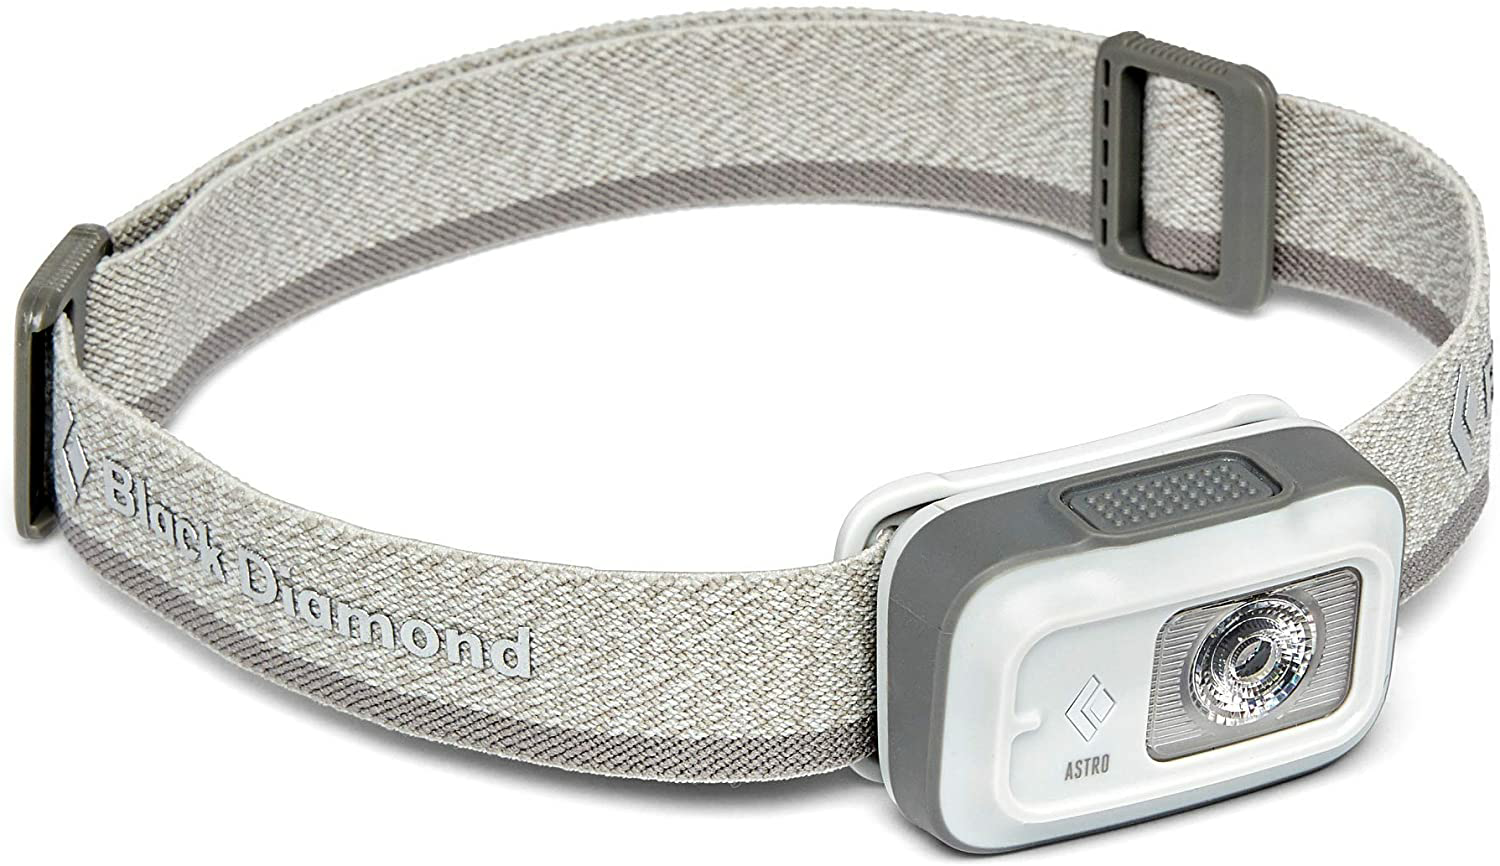 Amazon.com: Black Diamond Equipment - Astro 250 Headlamp - Aluminum : Tools & Home Improvement $14.96